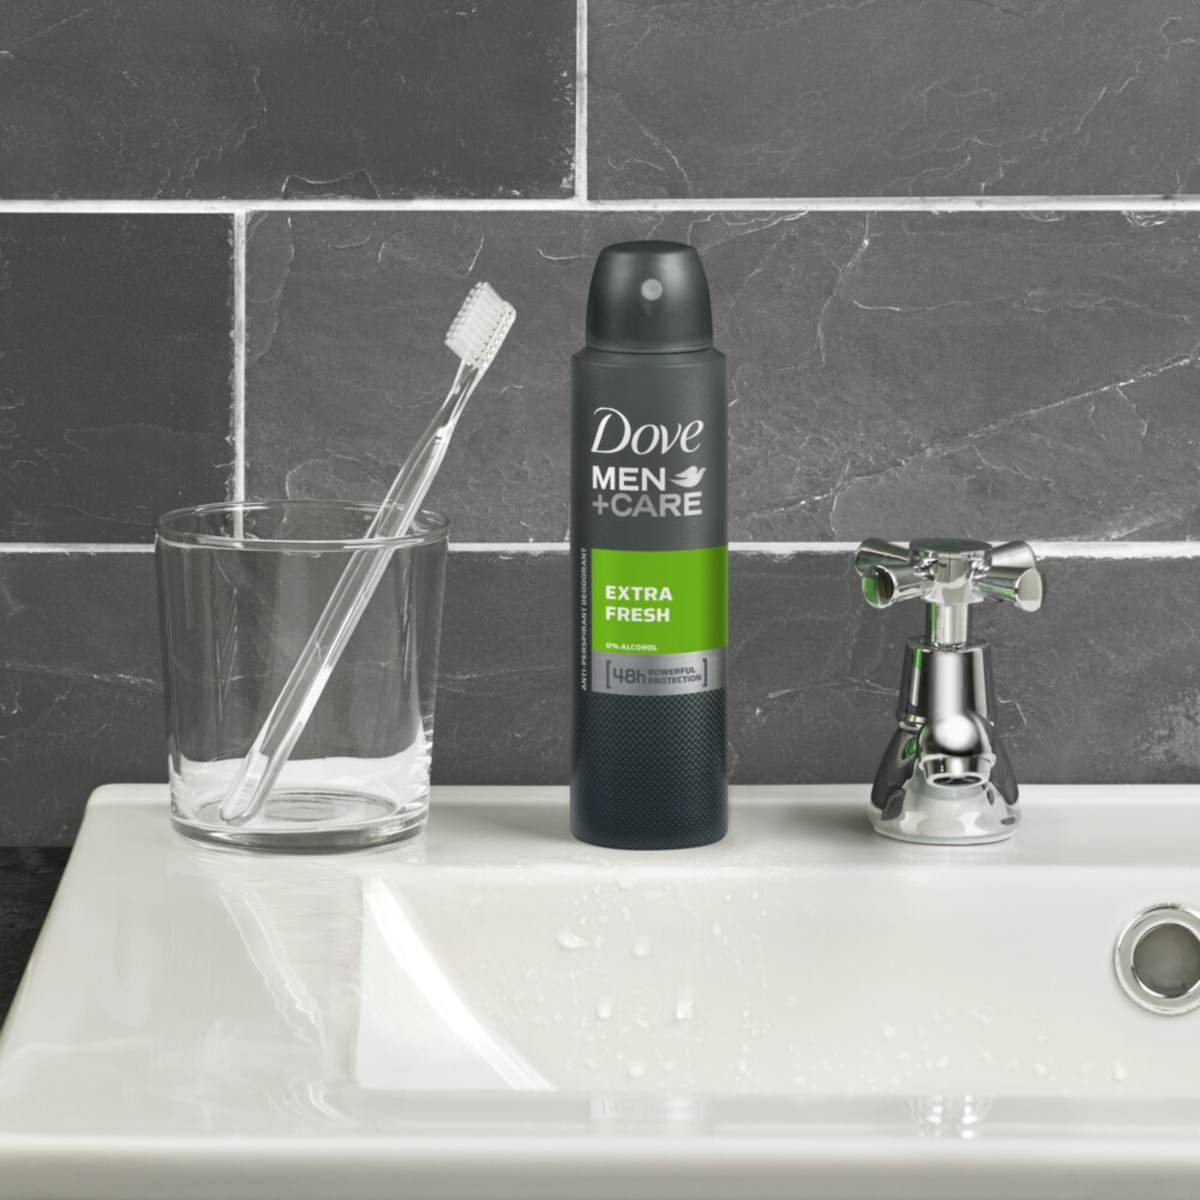 Dove Men+Care Anti-Perspirant Deodorant Extra Fresh 150 ml